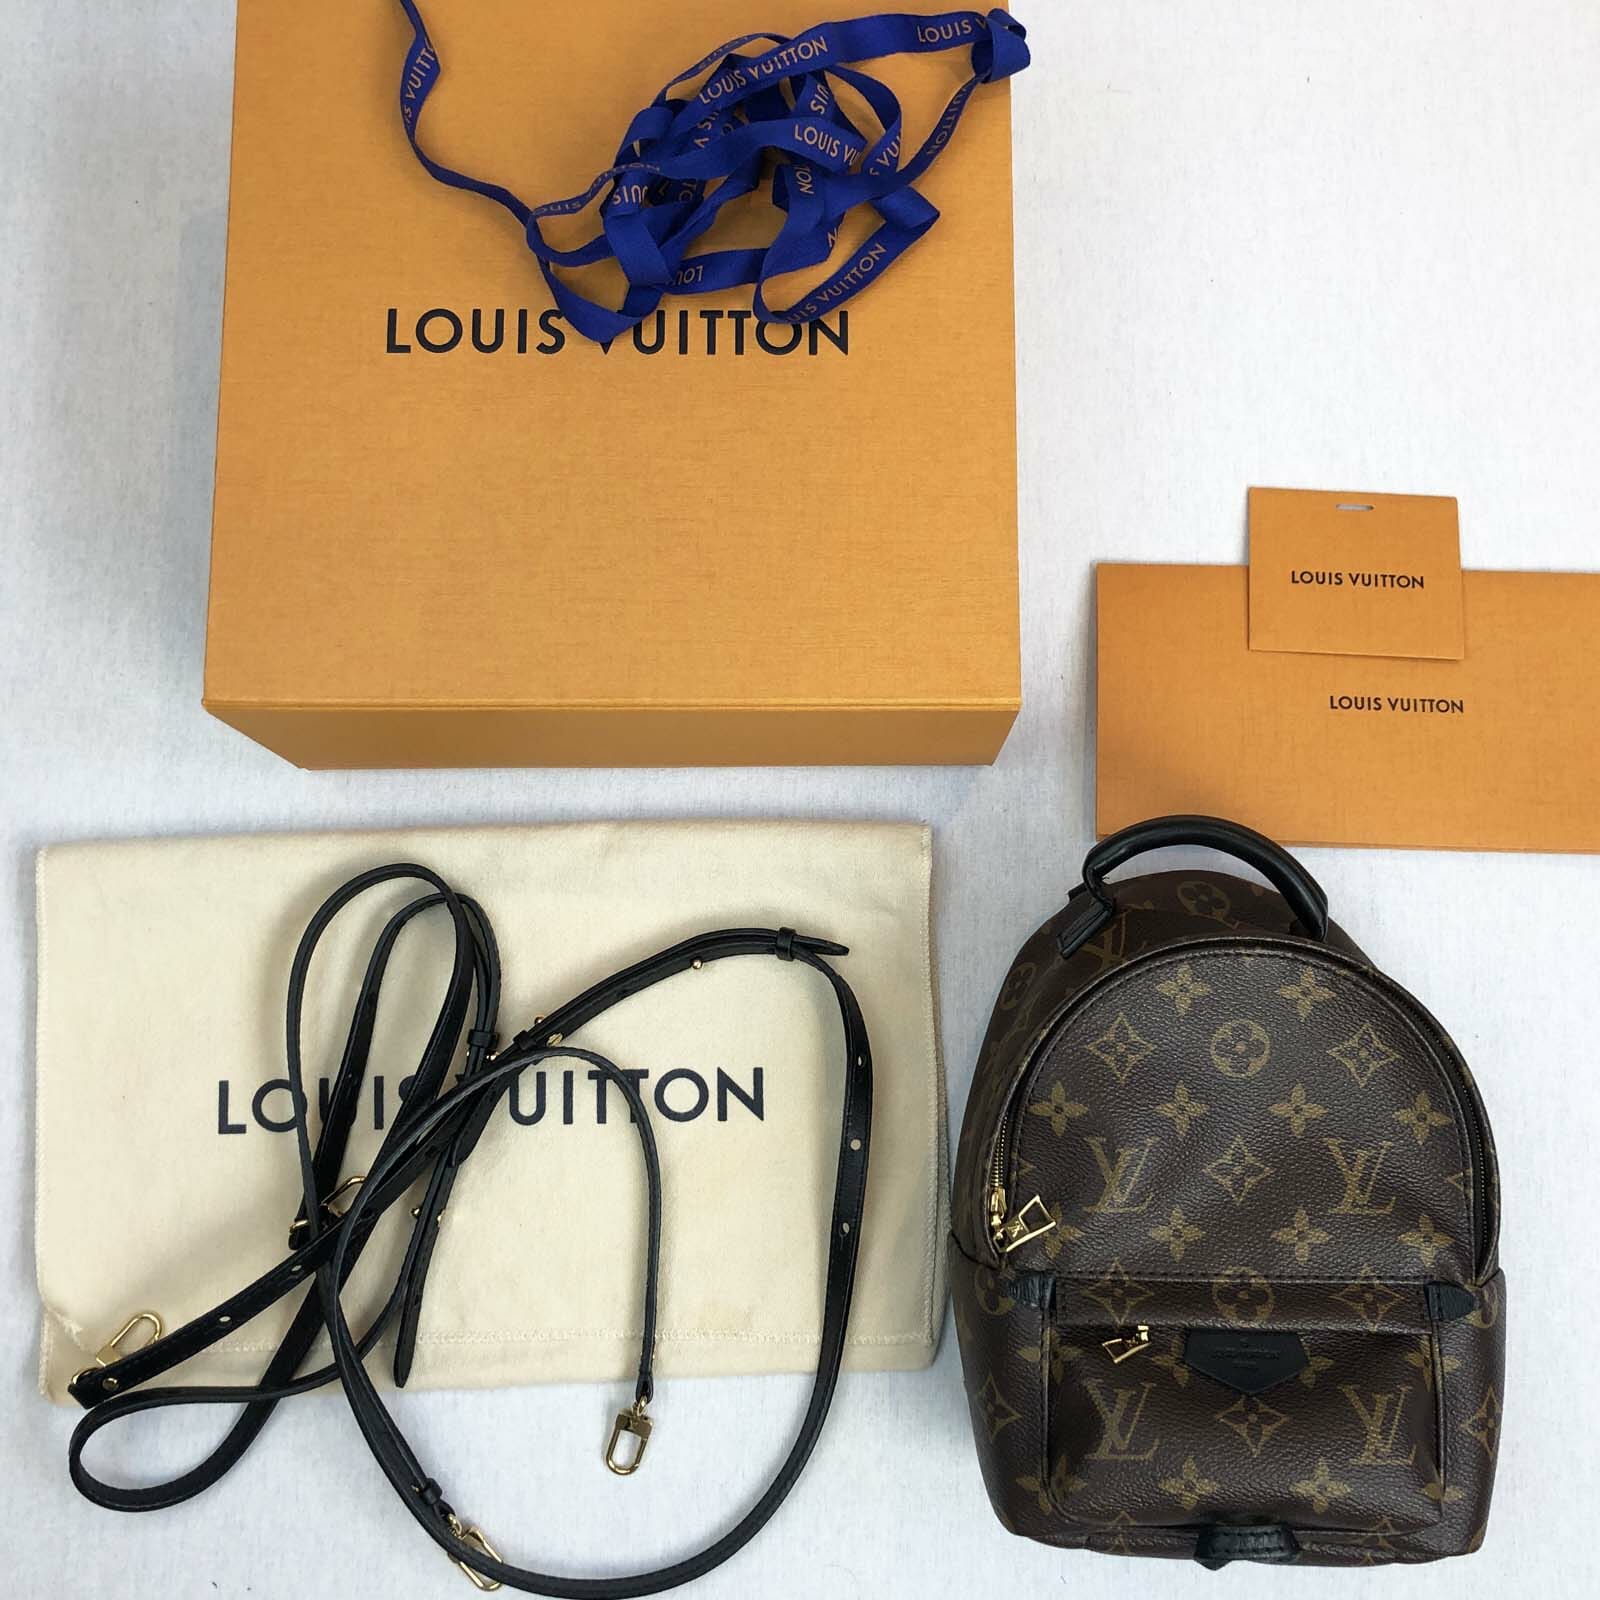 Louis Vuitton, Accessories, Louis Vuitton Cigarette Case Faded No Smell